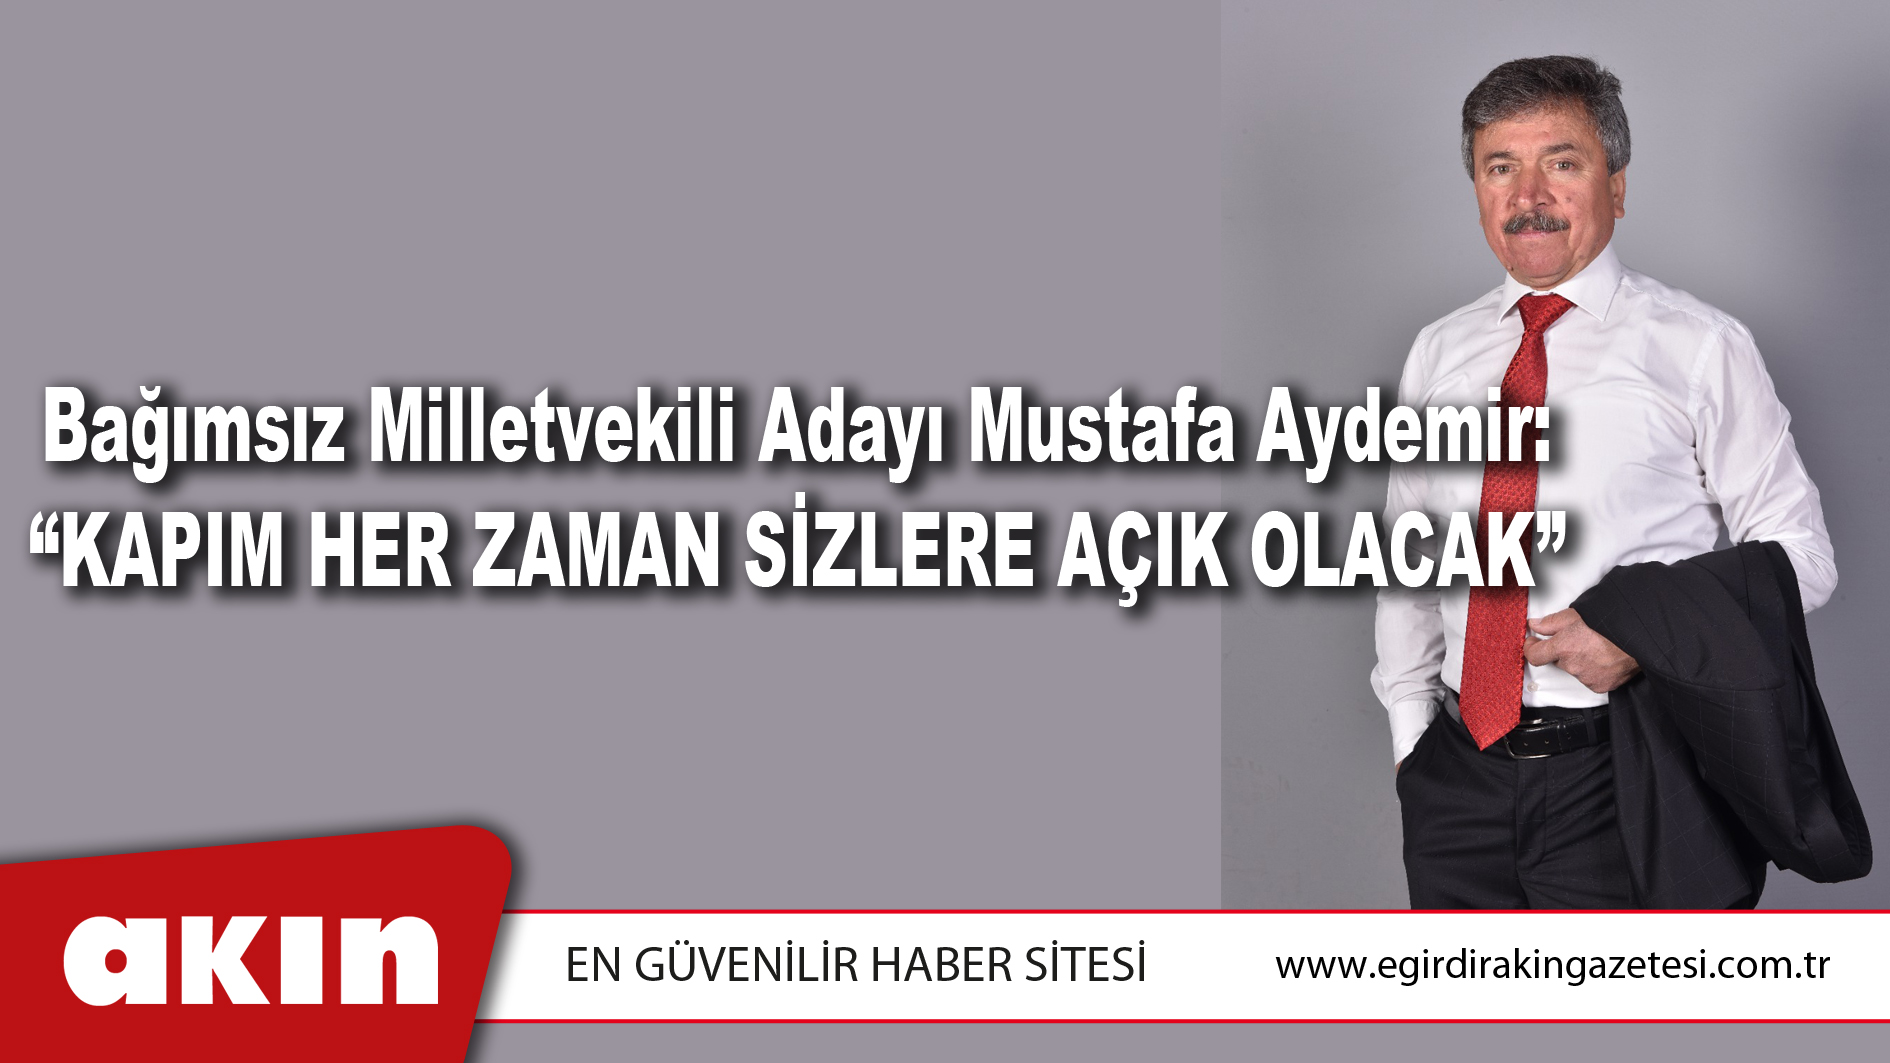 Bağımsız Milletvekili Adayı Mustafa Aydemir: “Kapım Her Zaman Sizlere Açık Olacak”